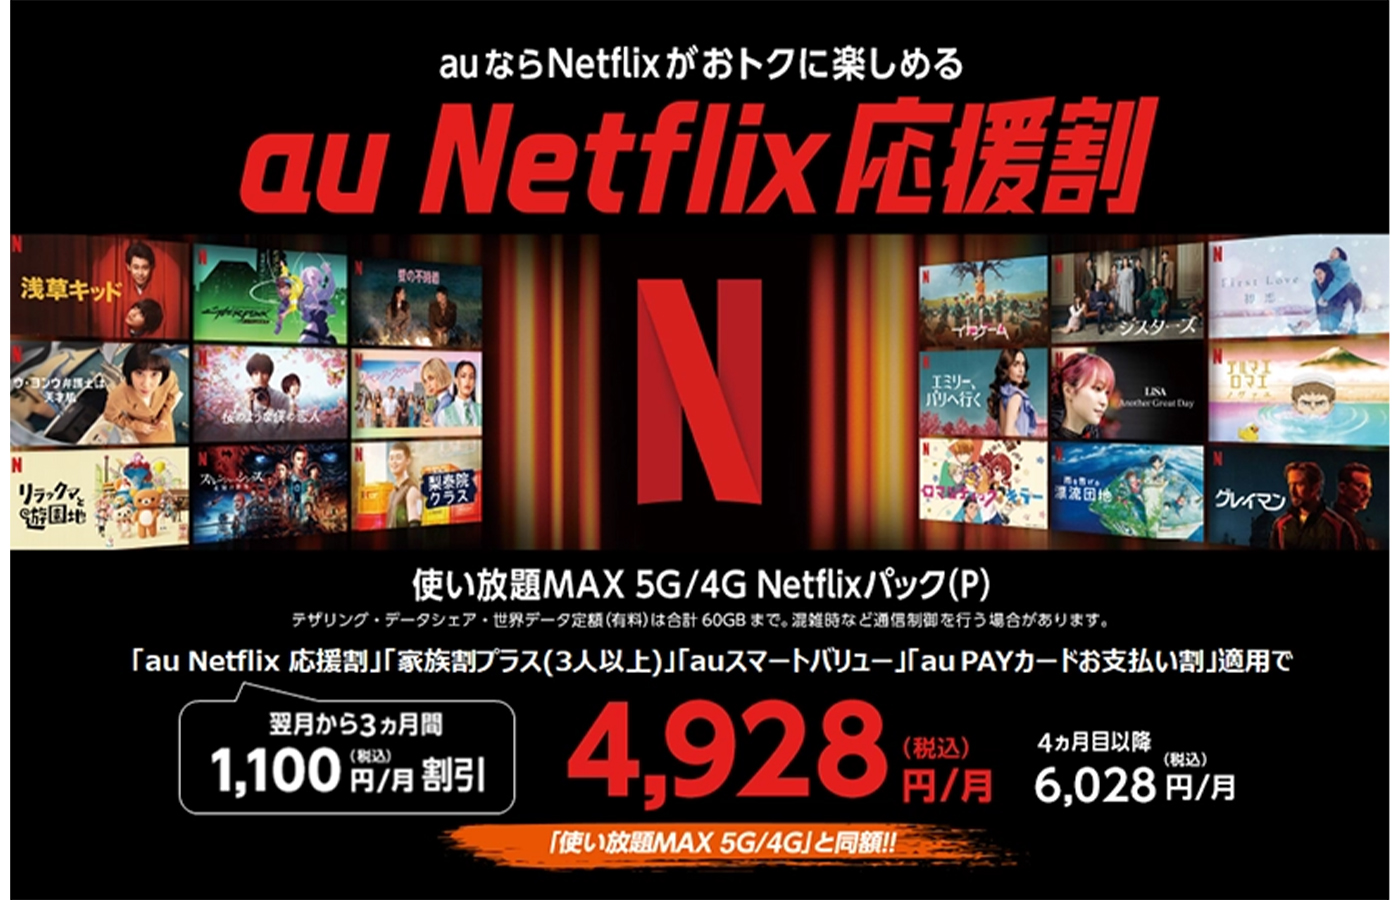 月々1100円割引で3ヵ月間「使い放題MAX 5G/4G Netflixパック（P）」が利用できる「au Netflix応援割」12月1日より実施